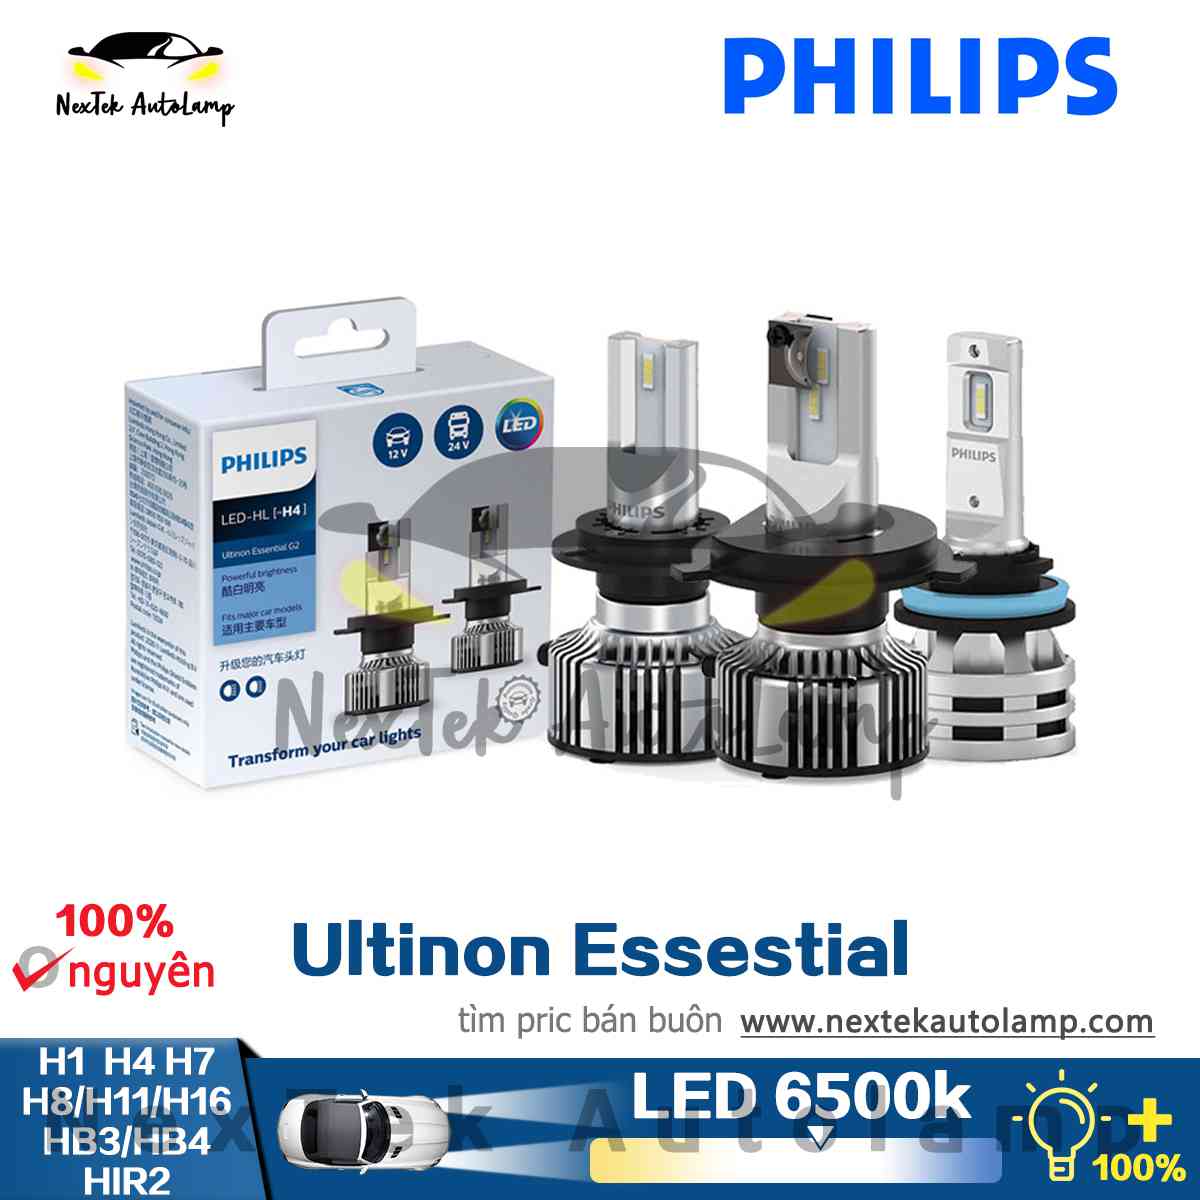 Philips Ultinon Essential LED Gen2 G2 H1 H4 H7 HB3 9005 HB4 9006 HIR2 H8 H9 H11 H16 Đèn Pha ô Tô Màu Trắng 6500K 12V 24V Xe Tải Tích Hợp ổ đĩa (1 Bóng đèn)